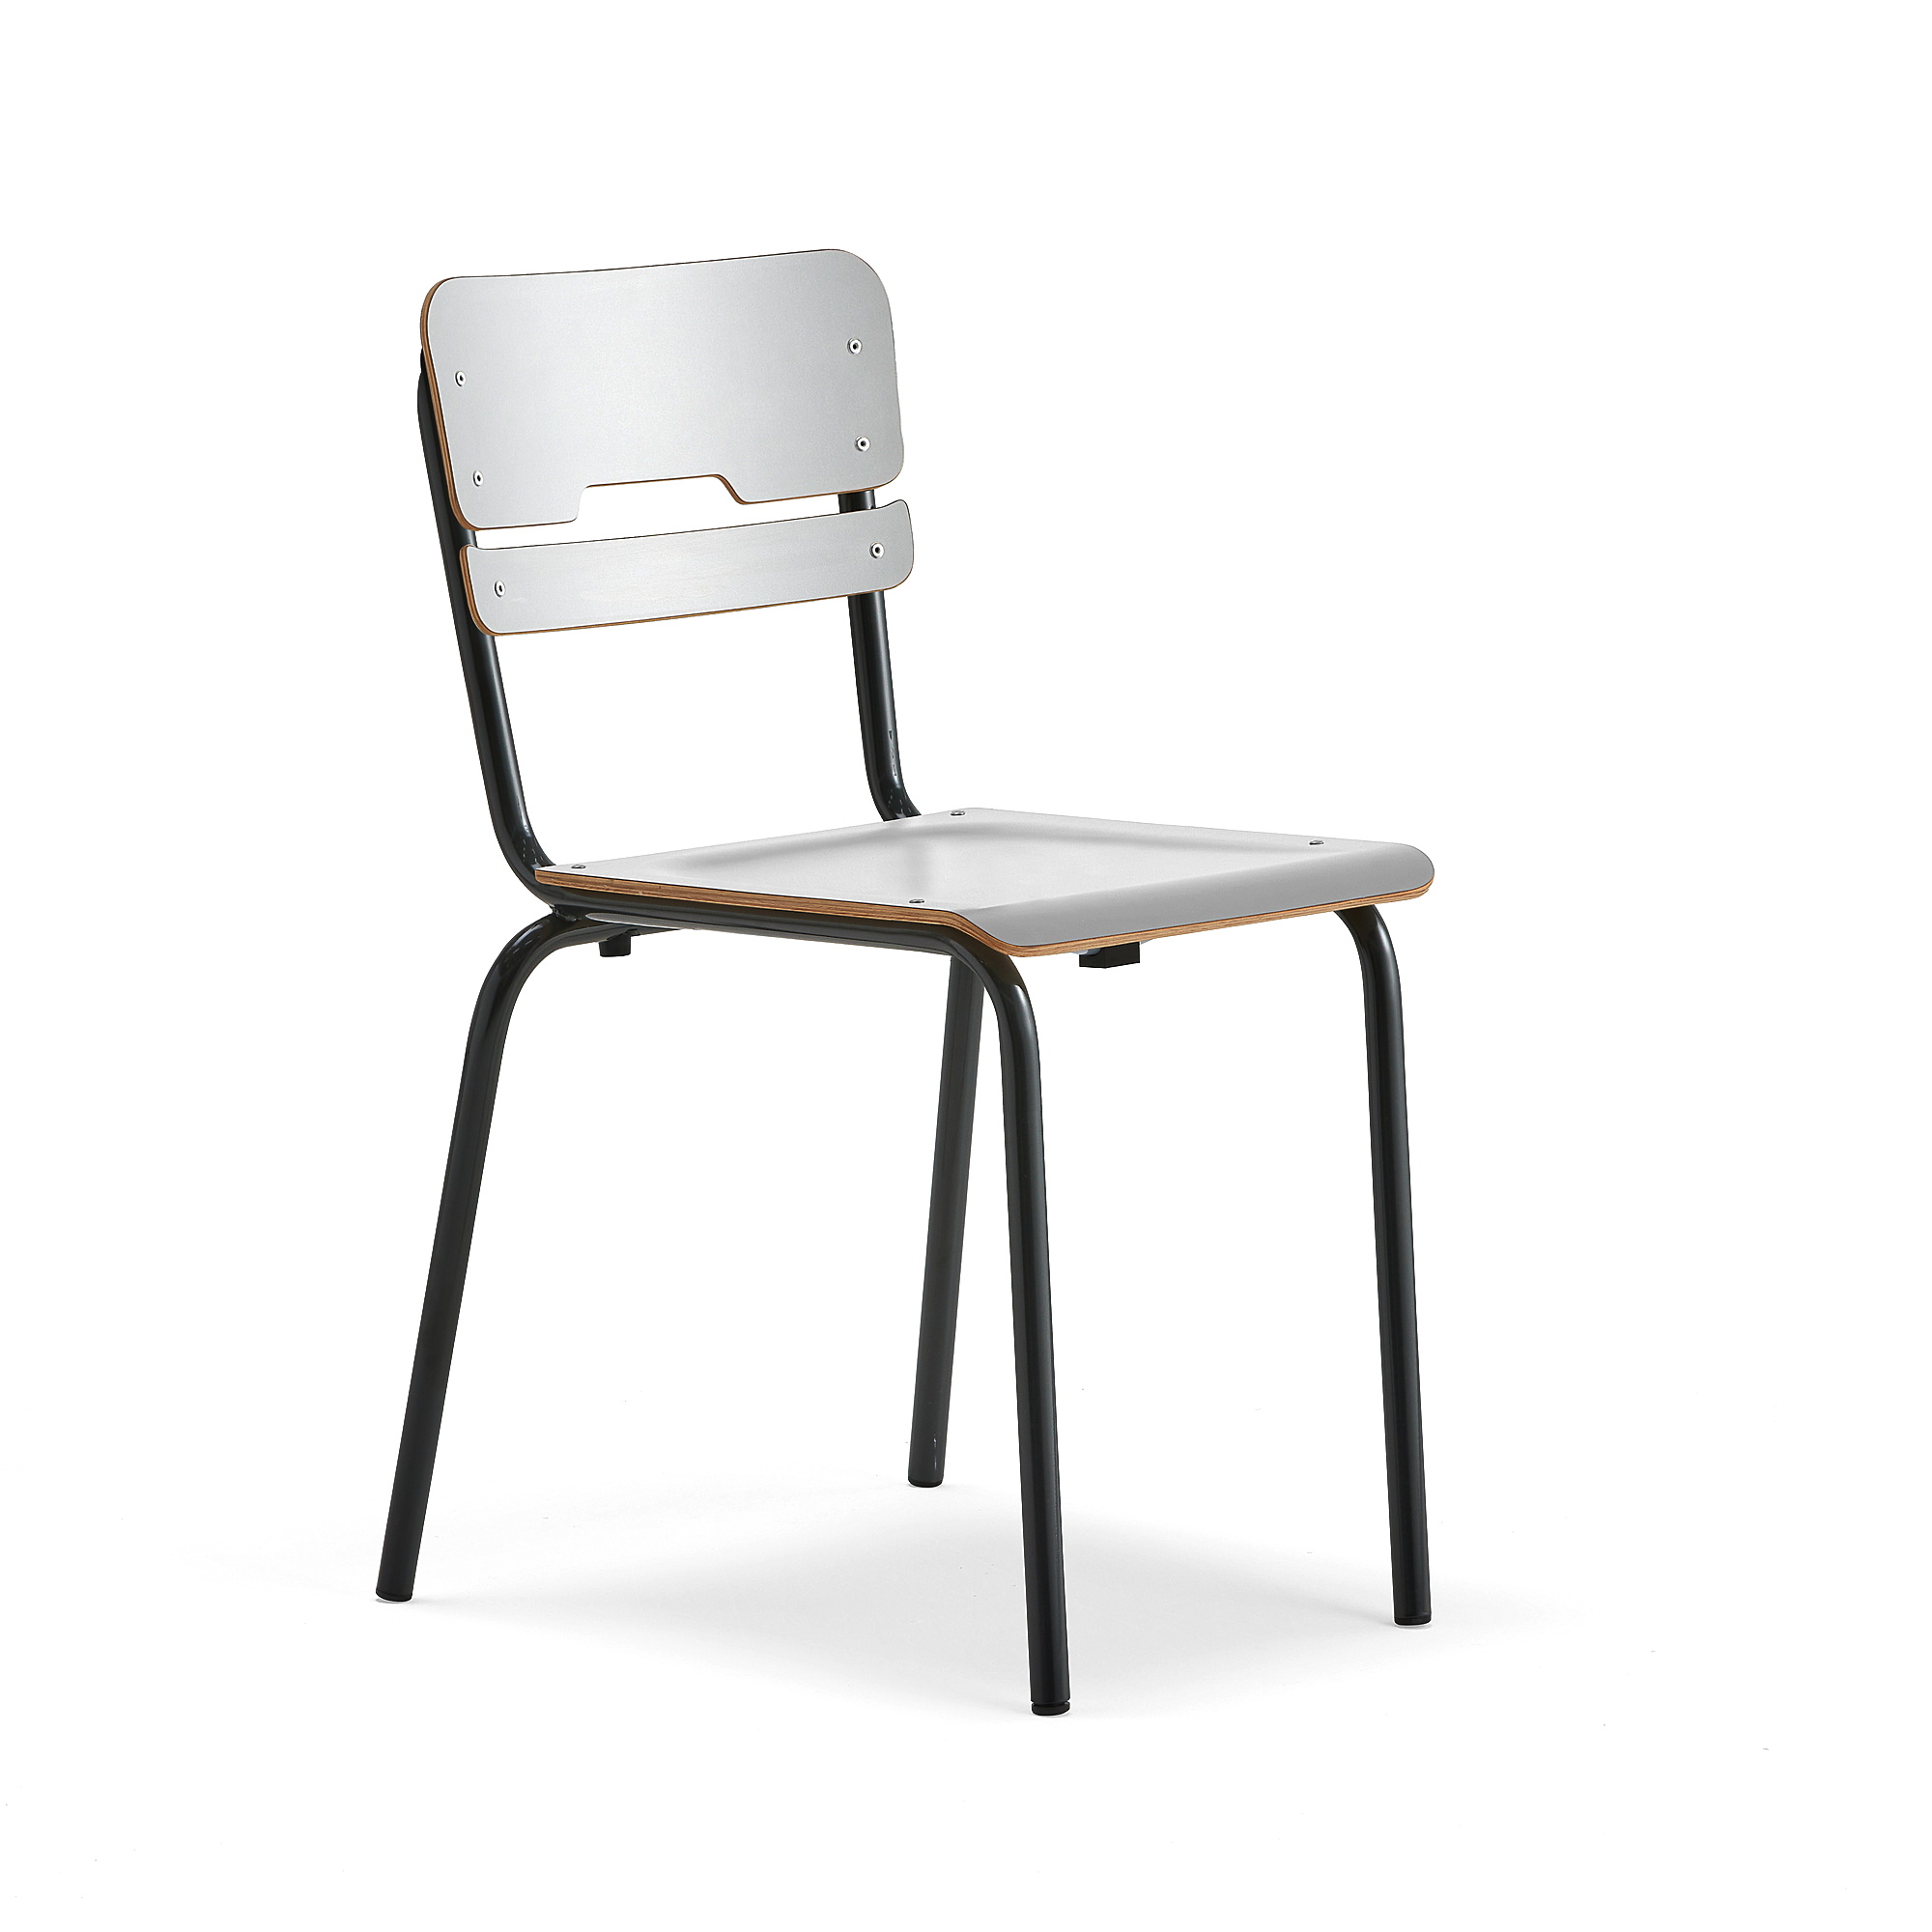 Školní židle SCIENTIA, sedák 390x390 mm, výška 460 mm, antracitová/šedá